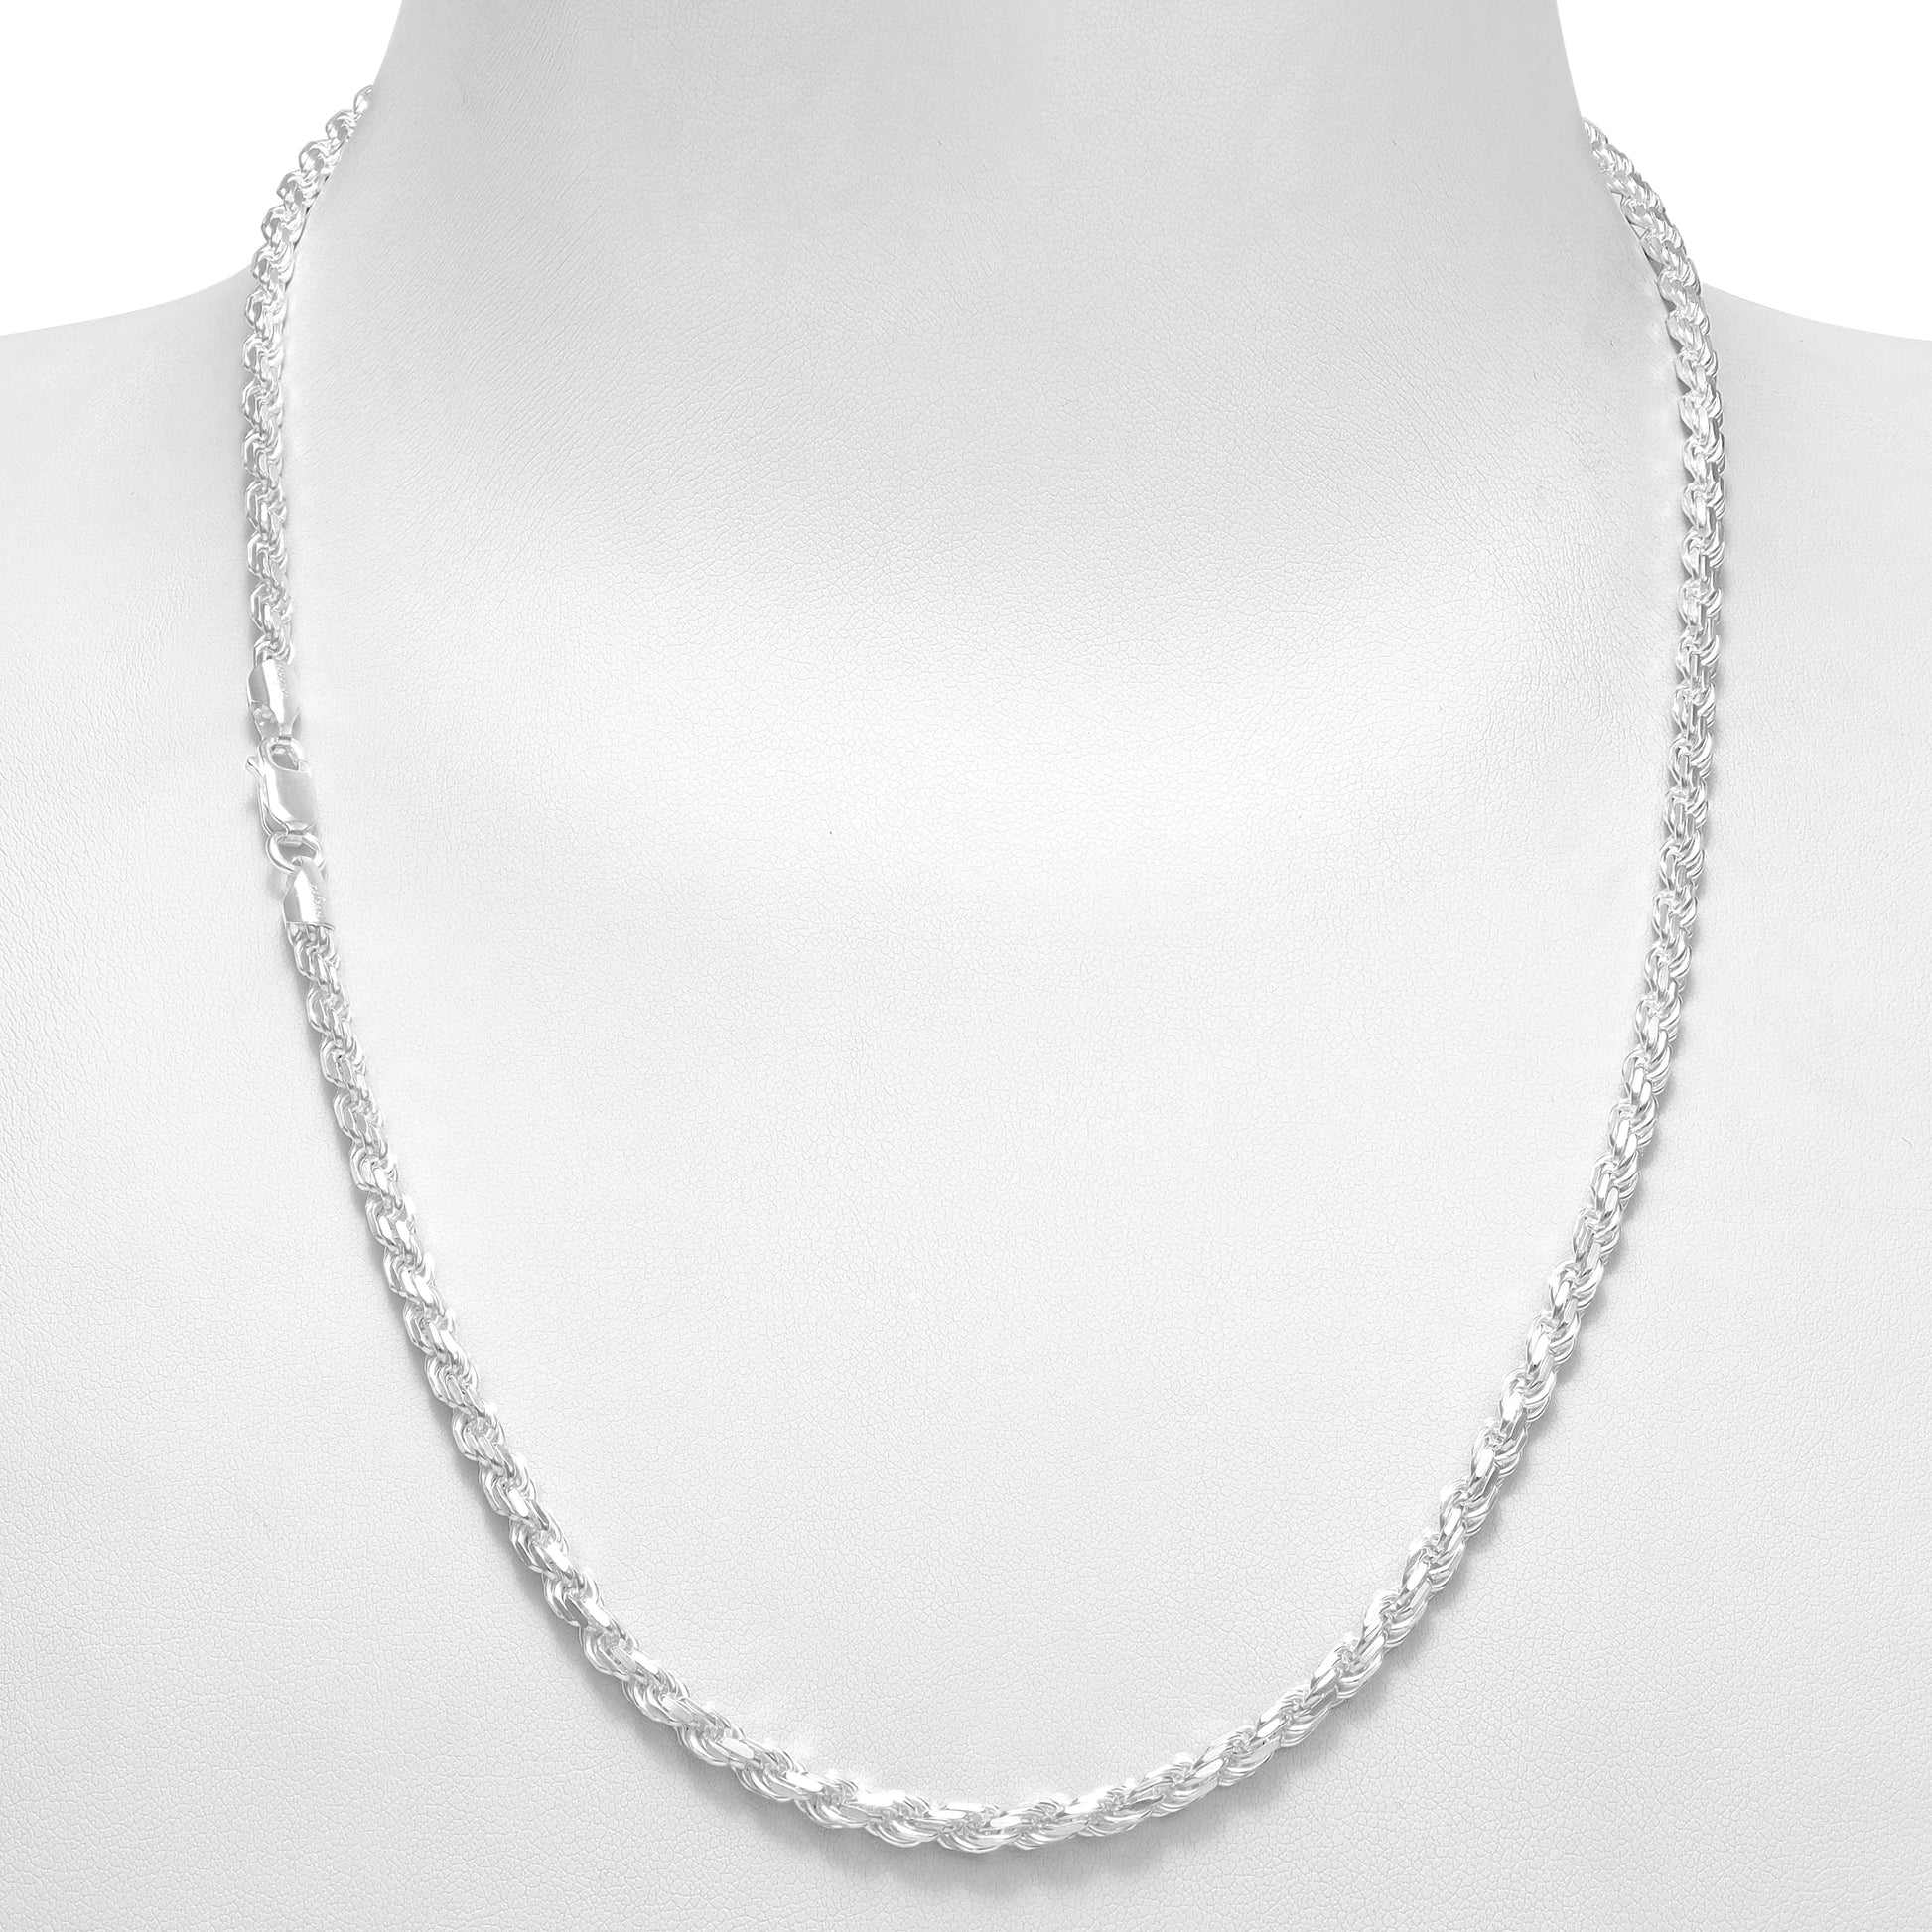 Kordelkette Rope Chain 3,5mm breit 55cm lang massiv 925 Sterling Silber (K508) - Taipan Schmuck